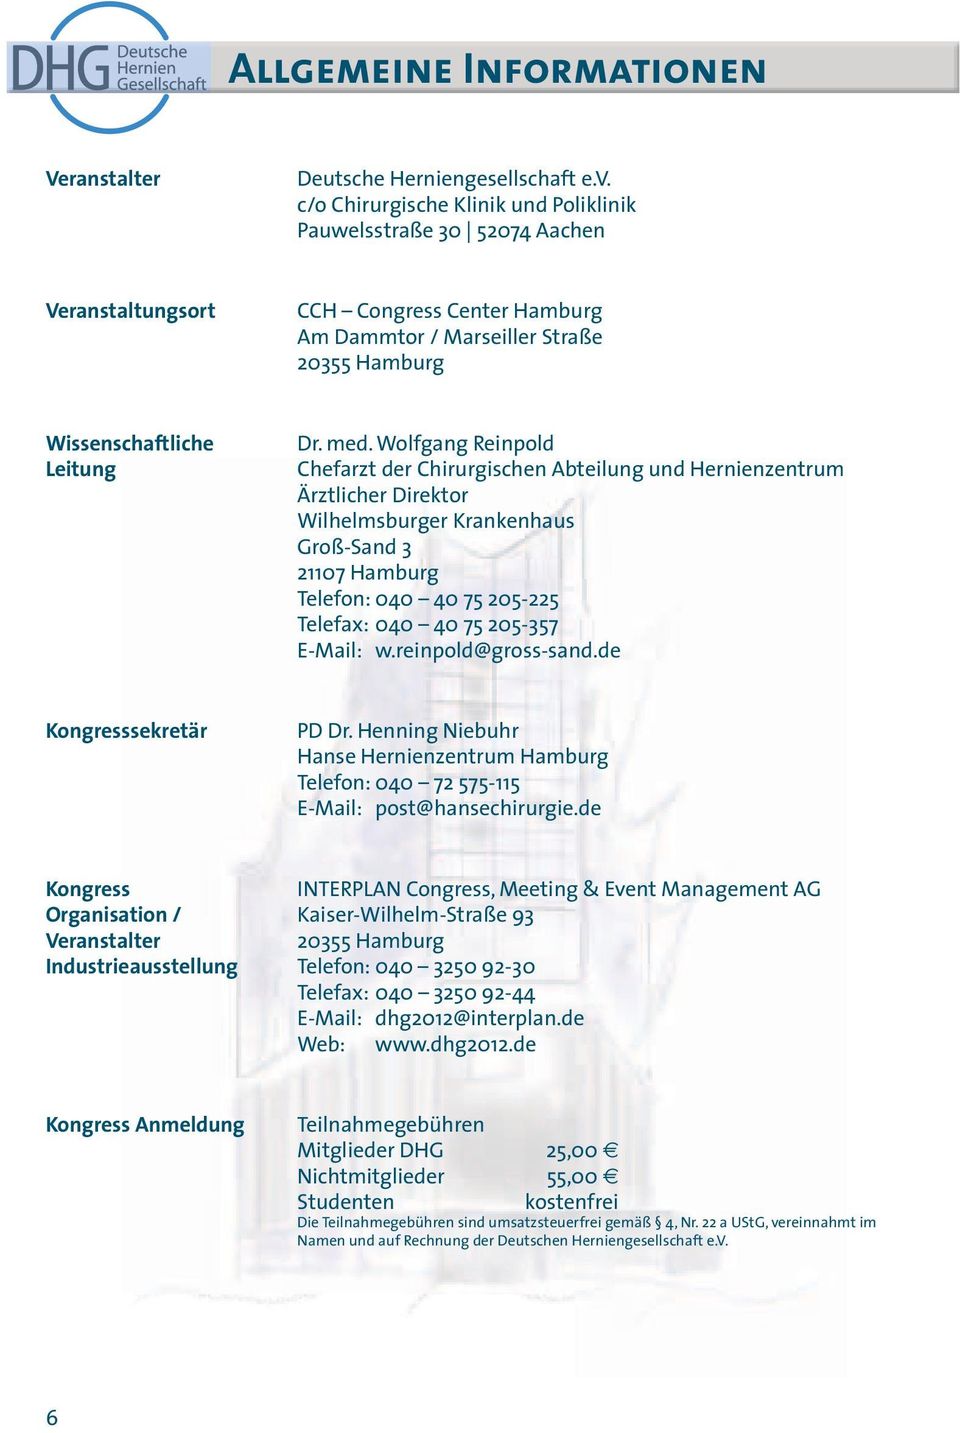 Wolfgang Reinpold Chefarzt der Chirurgischen Abteilung und Hernienzentrum Ärztlicher Direktor Wilhelmsburger Krankenhaus Groß-Sand 3 21107 Hamburg Telefon: 040 40 75 205-225 Telefax: 040 40 75